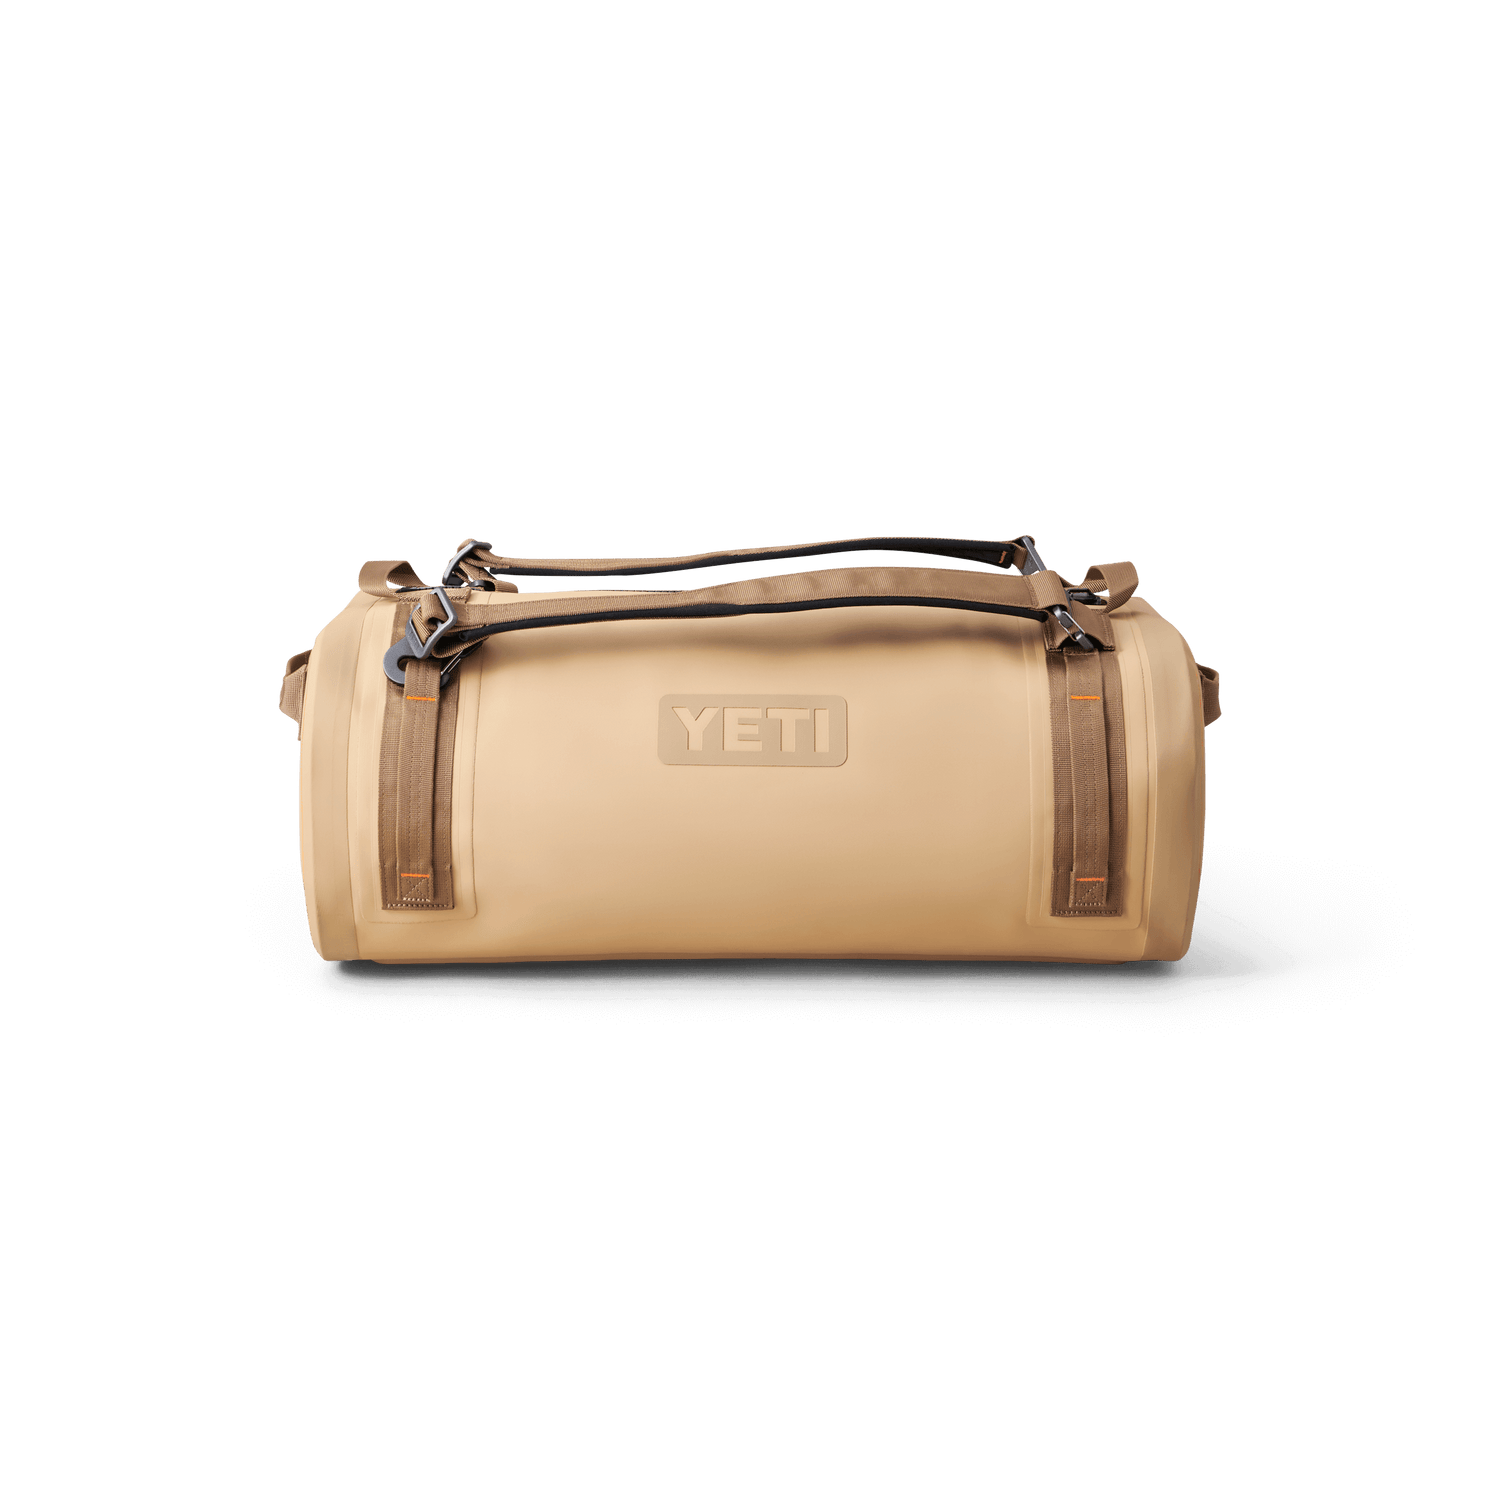 YETI Duffel Bags: Waterproof And Travel – YETI EUROPE